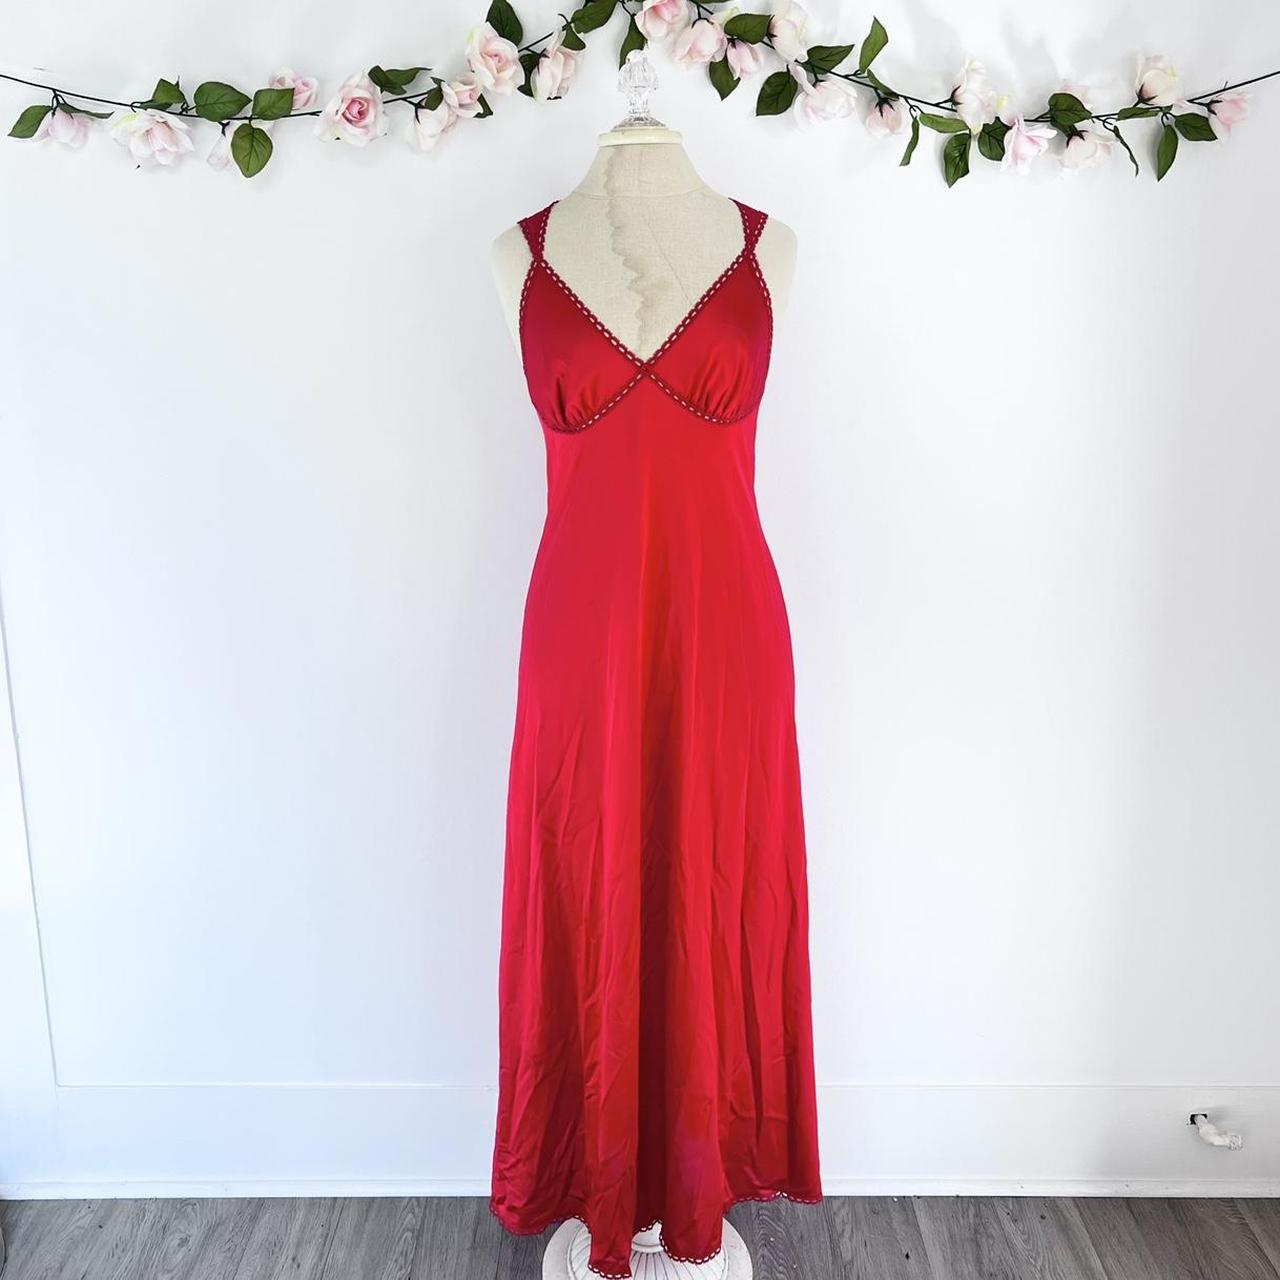 Long Red Slip Dress ♥️ Vintage Vanity Fair Marked as... - Depop